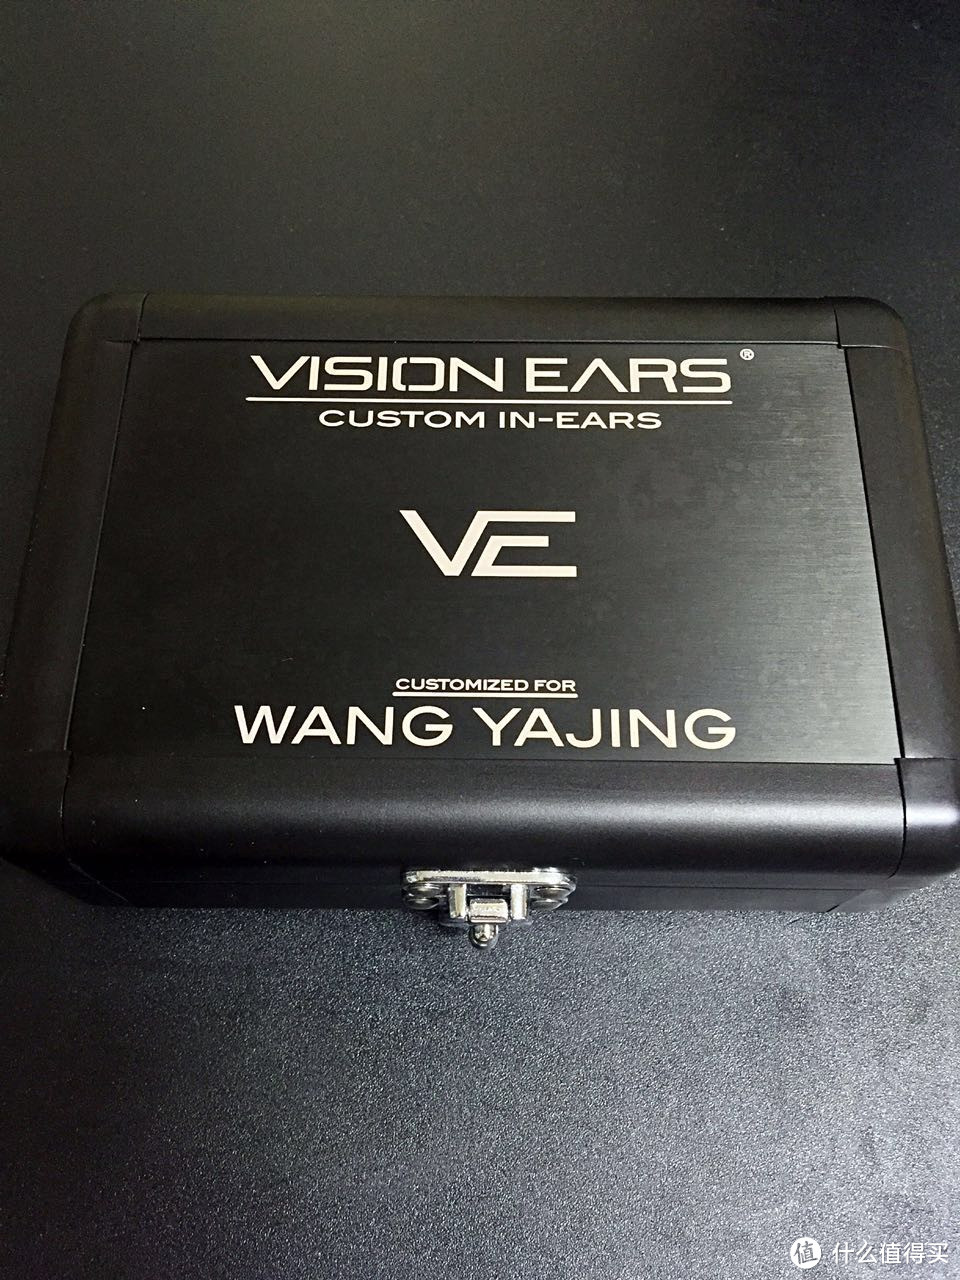 德意志的声音 Vision Ears VE5 5单元定制耳机 以及一些关于耳机的心得